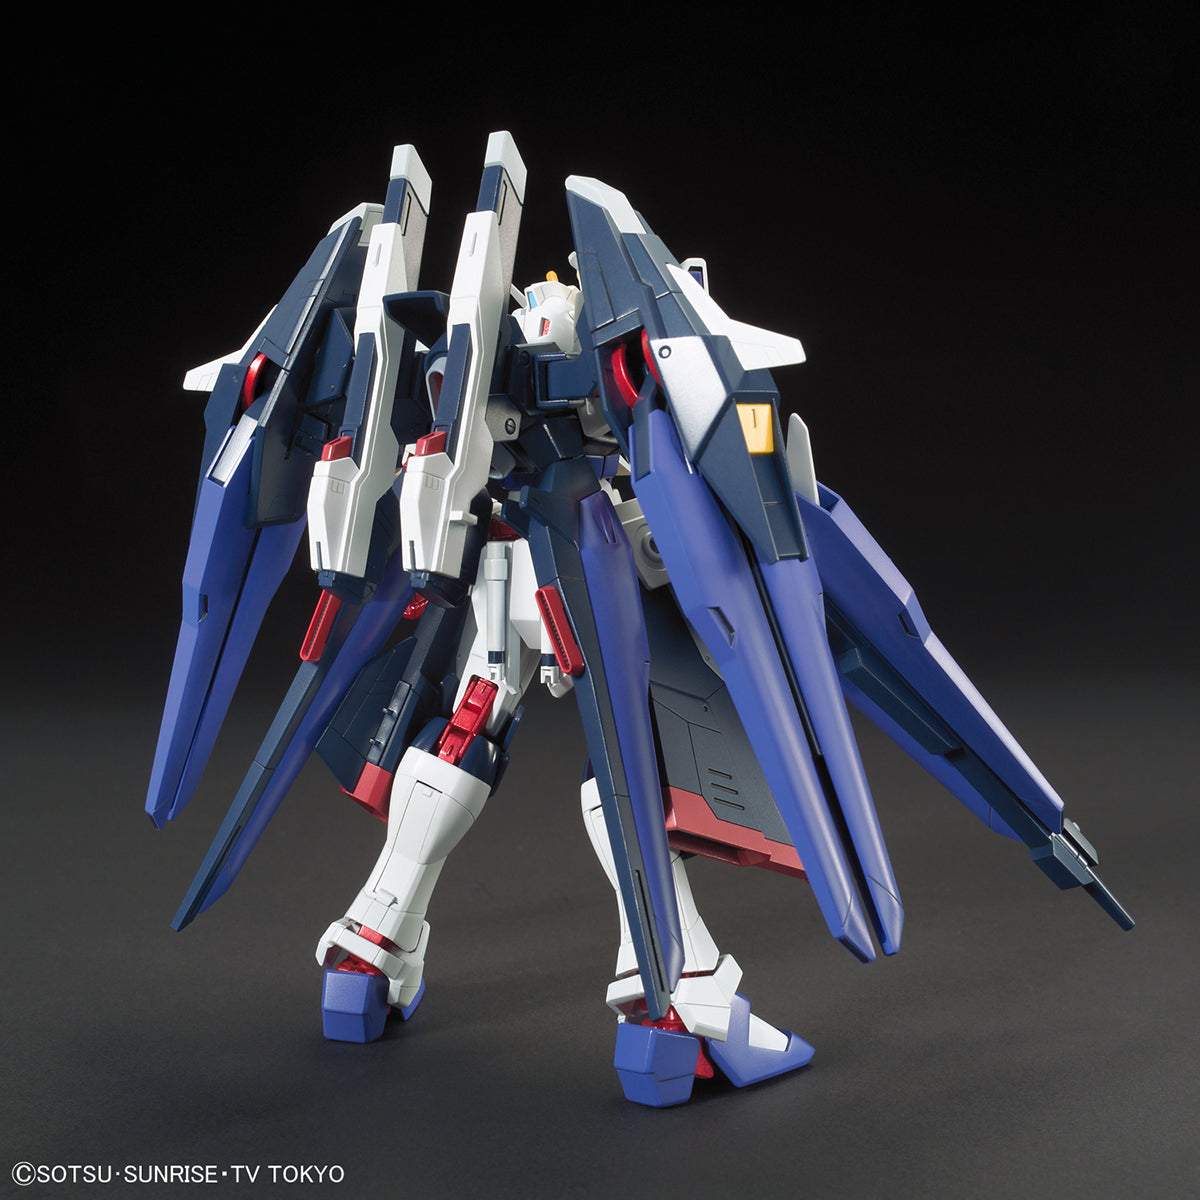 HGBF 1/144 Amazing Strike Freedom Gundam